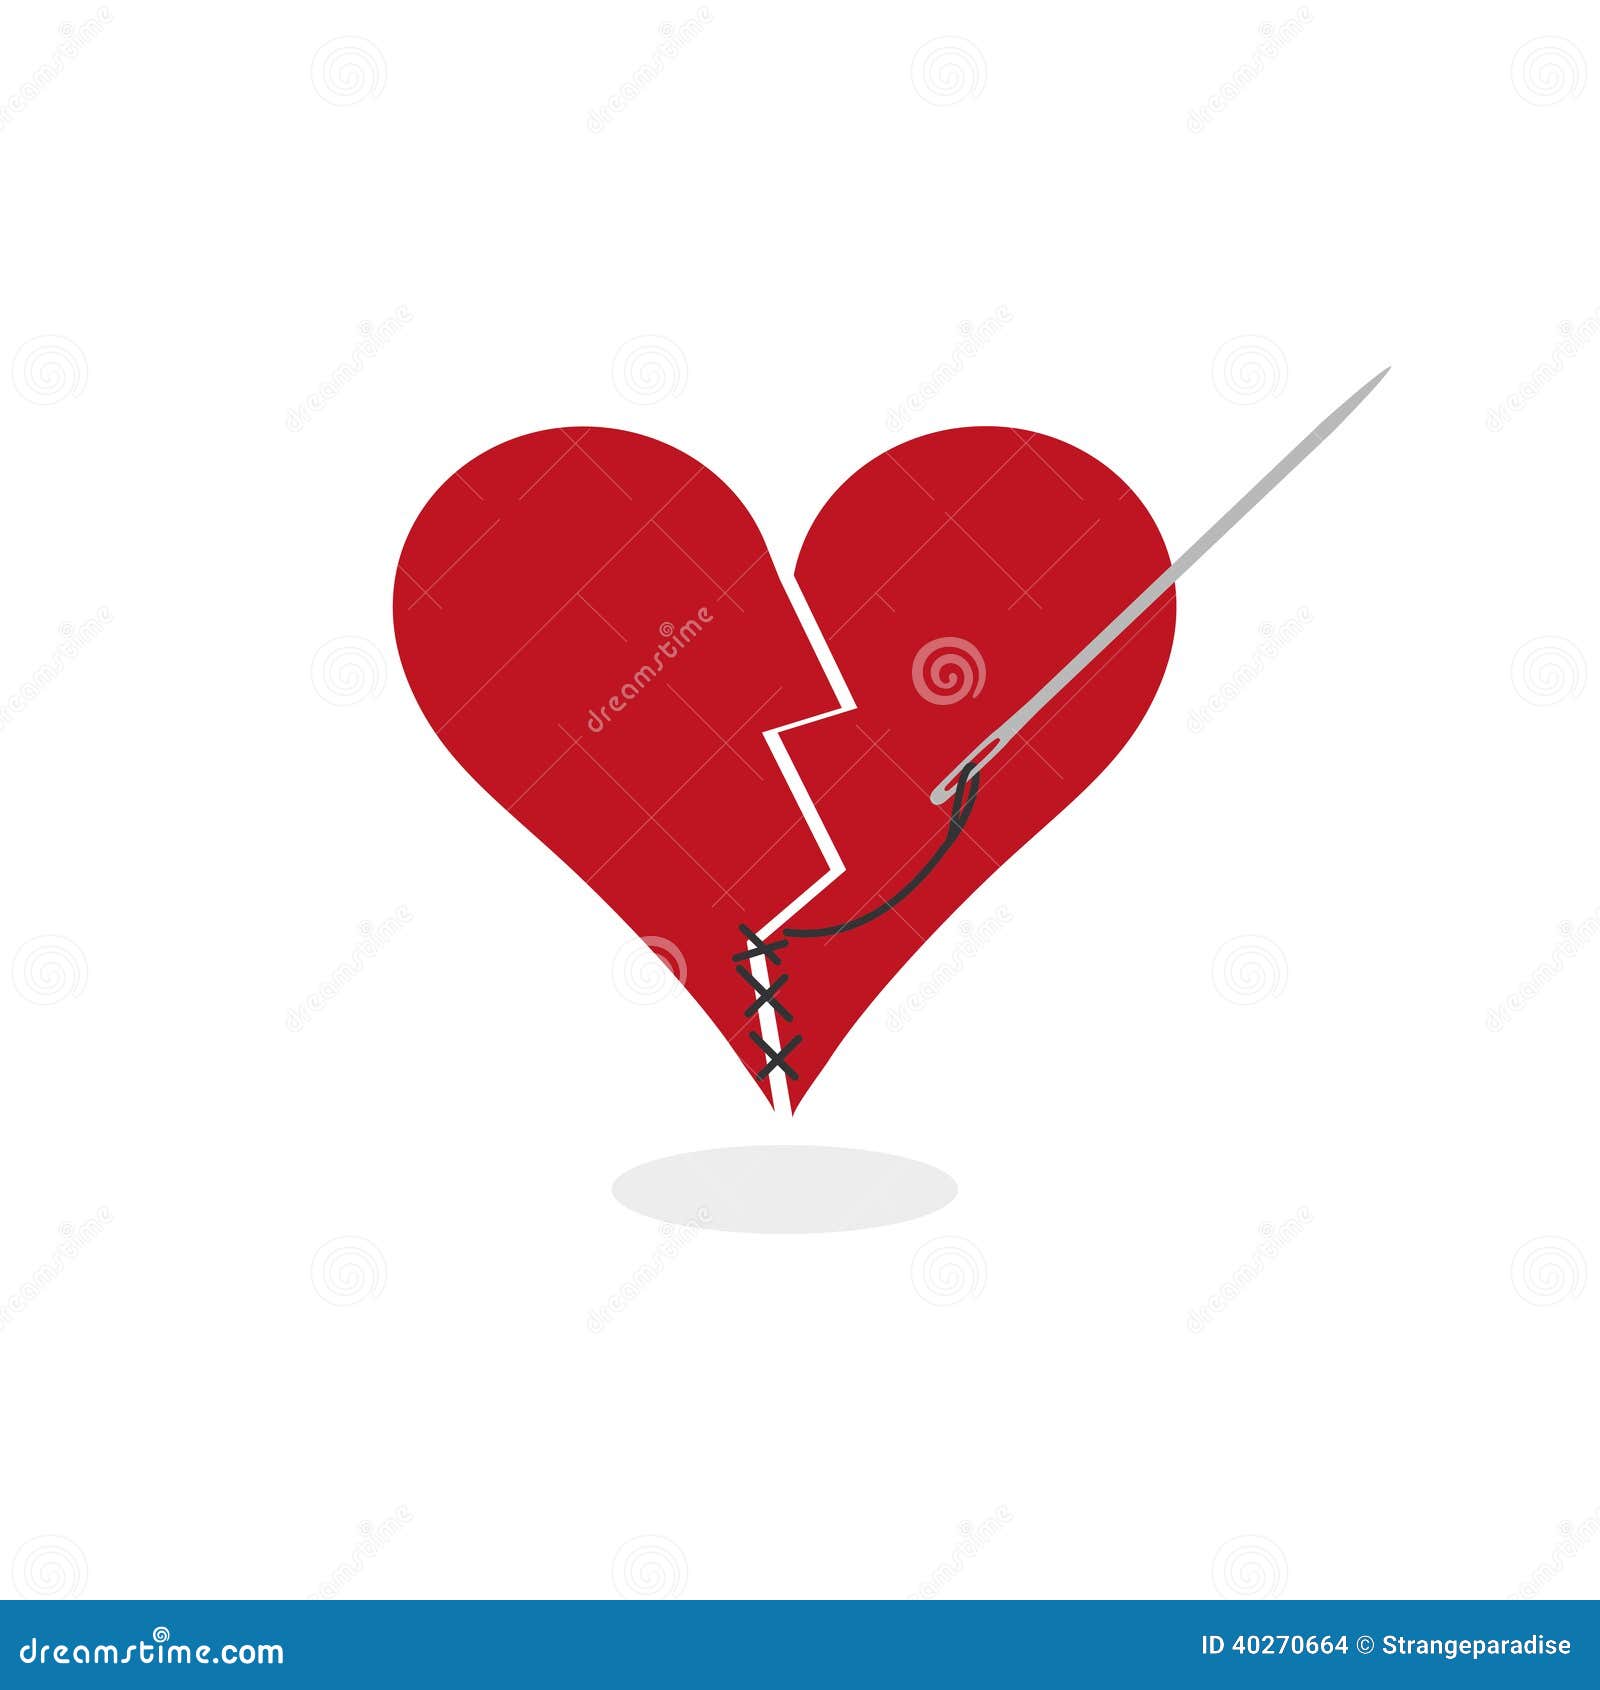 Mending A Broken Heart Concept Digital Illustration Stock Vector ...